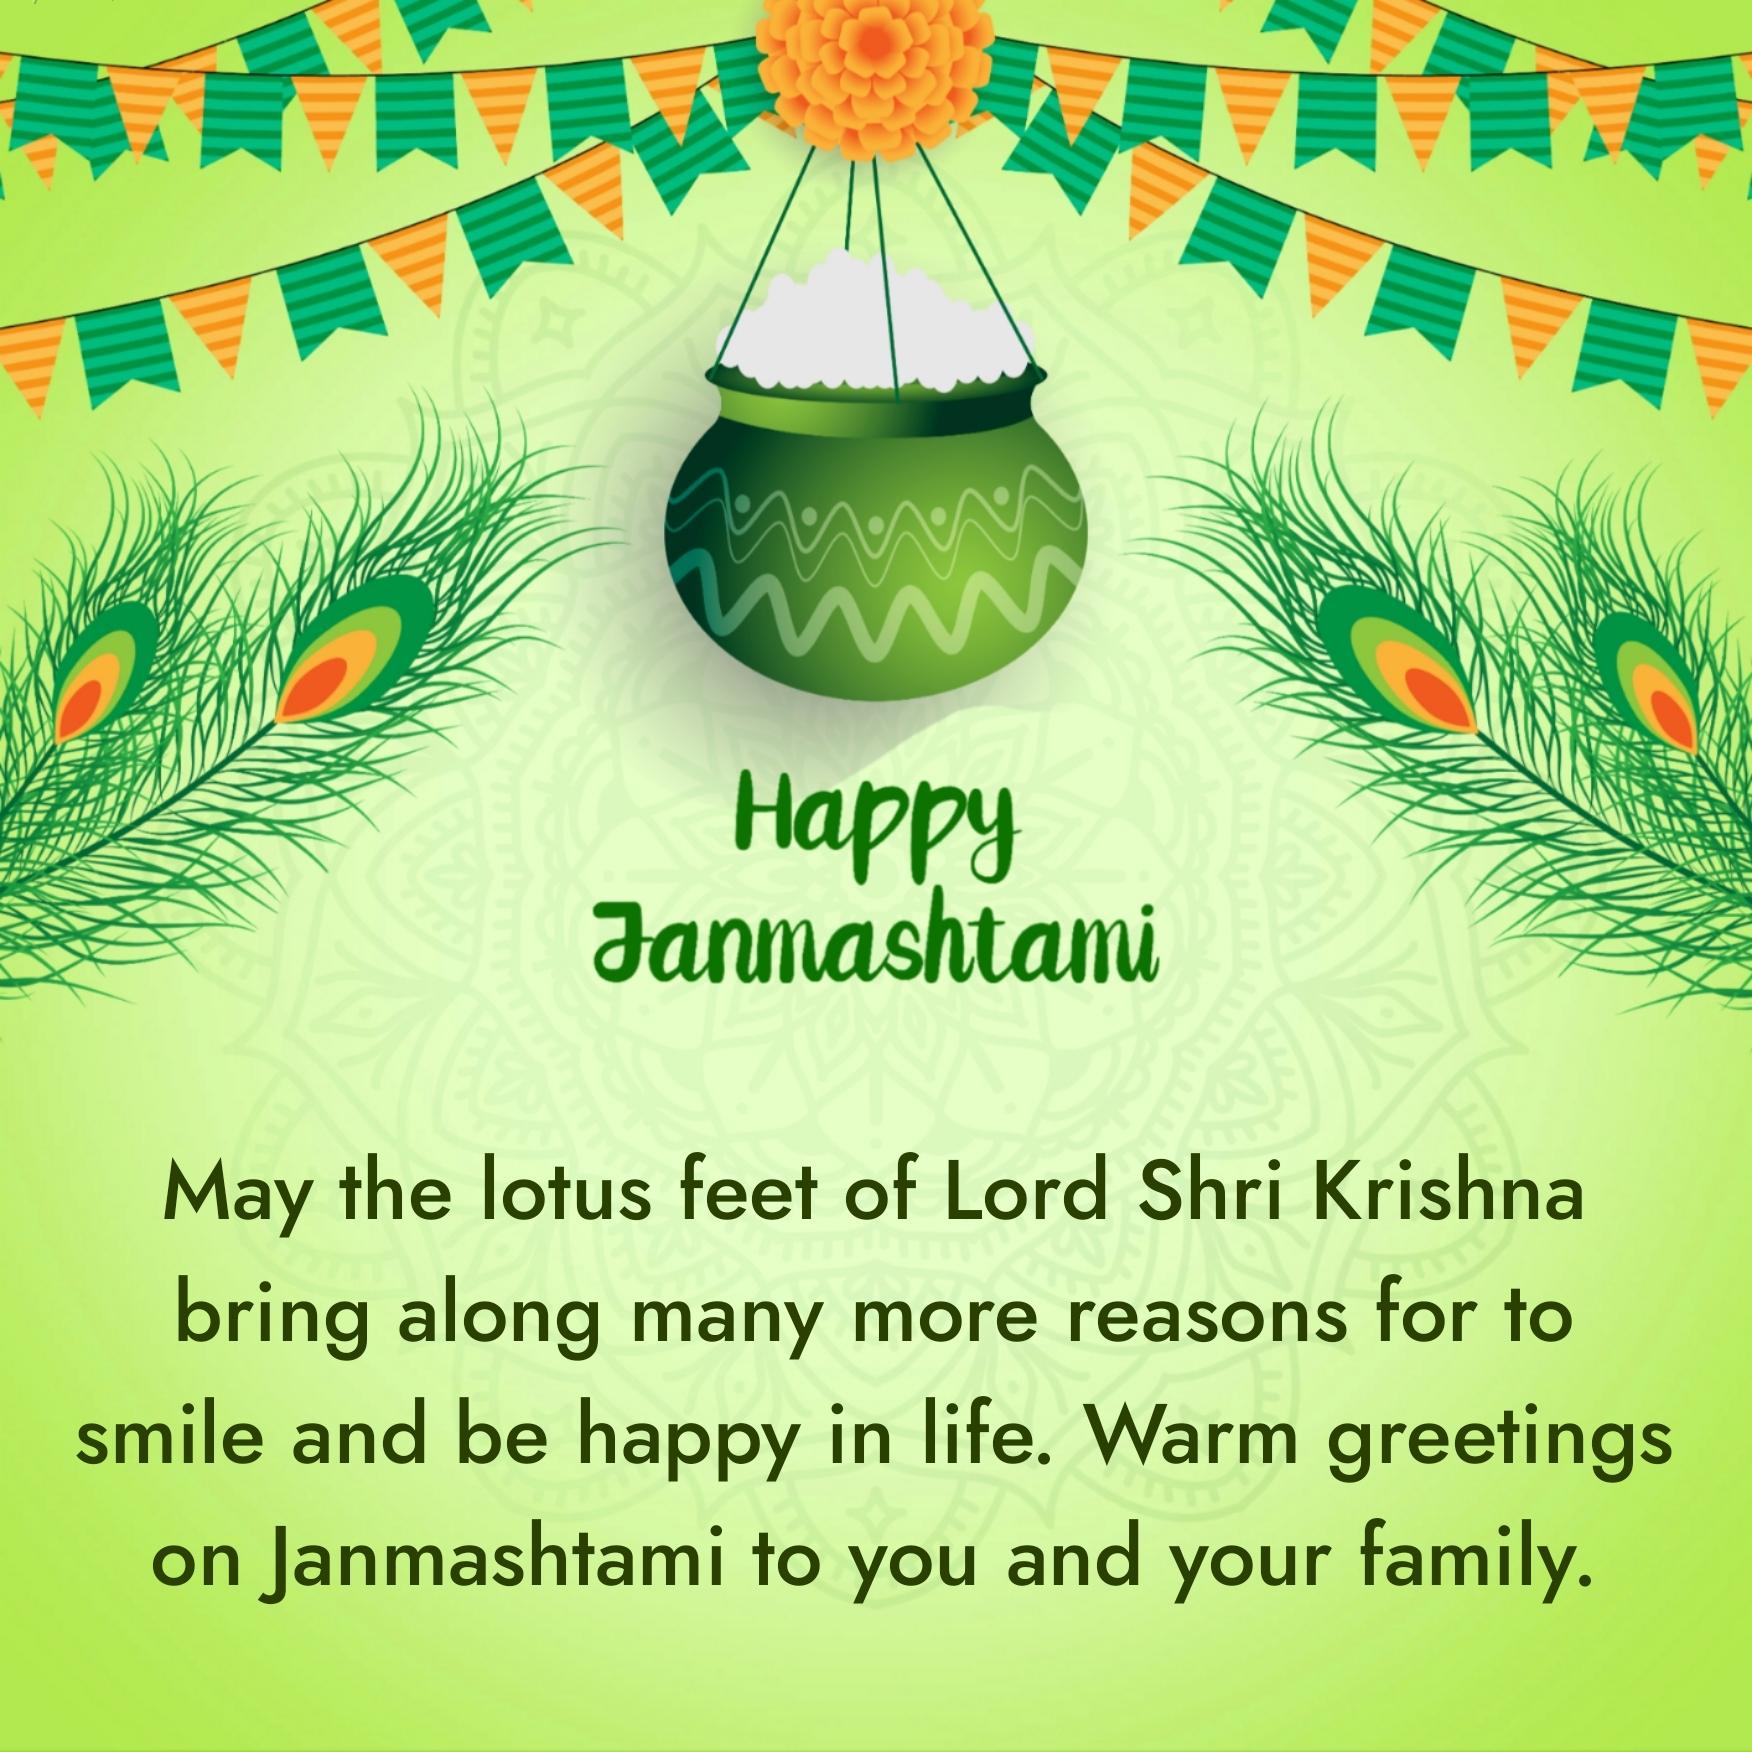 May the lotus feet of Lord Shri Krishna bring along many more reasons